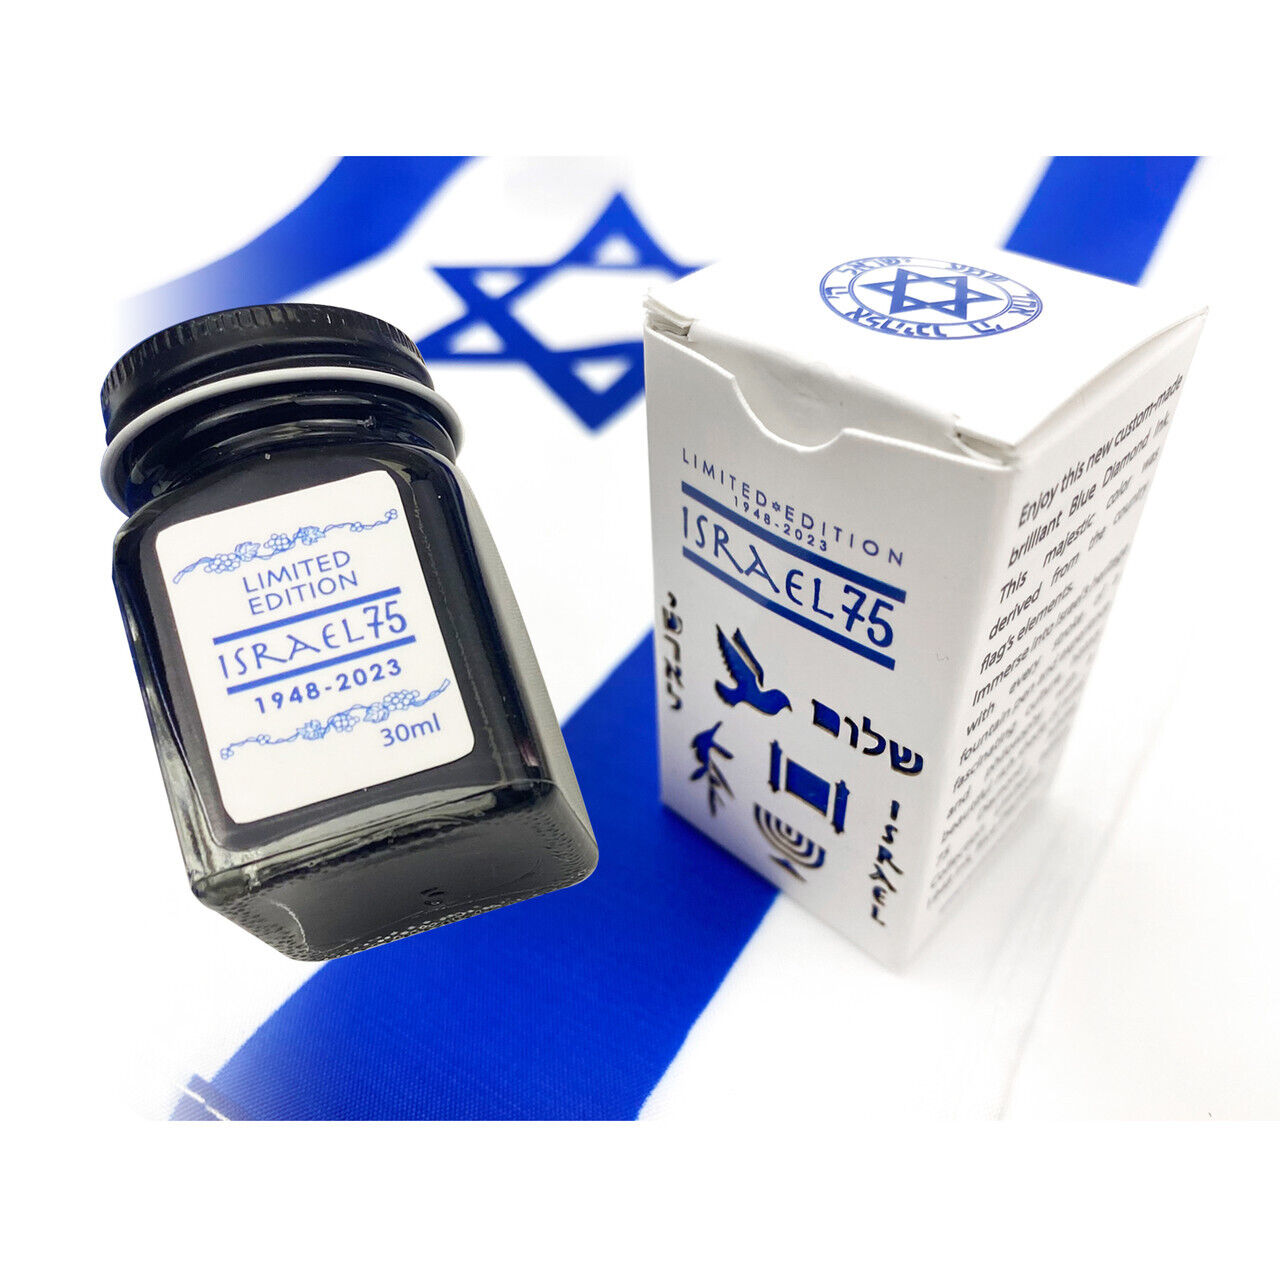 Conklin Israel 75 Diamond Jubilee Bottled Ink in 1948 - Limited Edition 30mL NEW